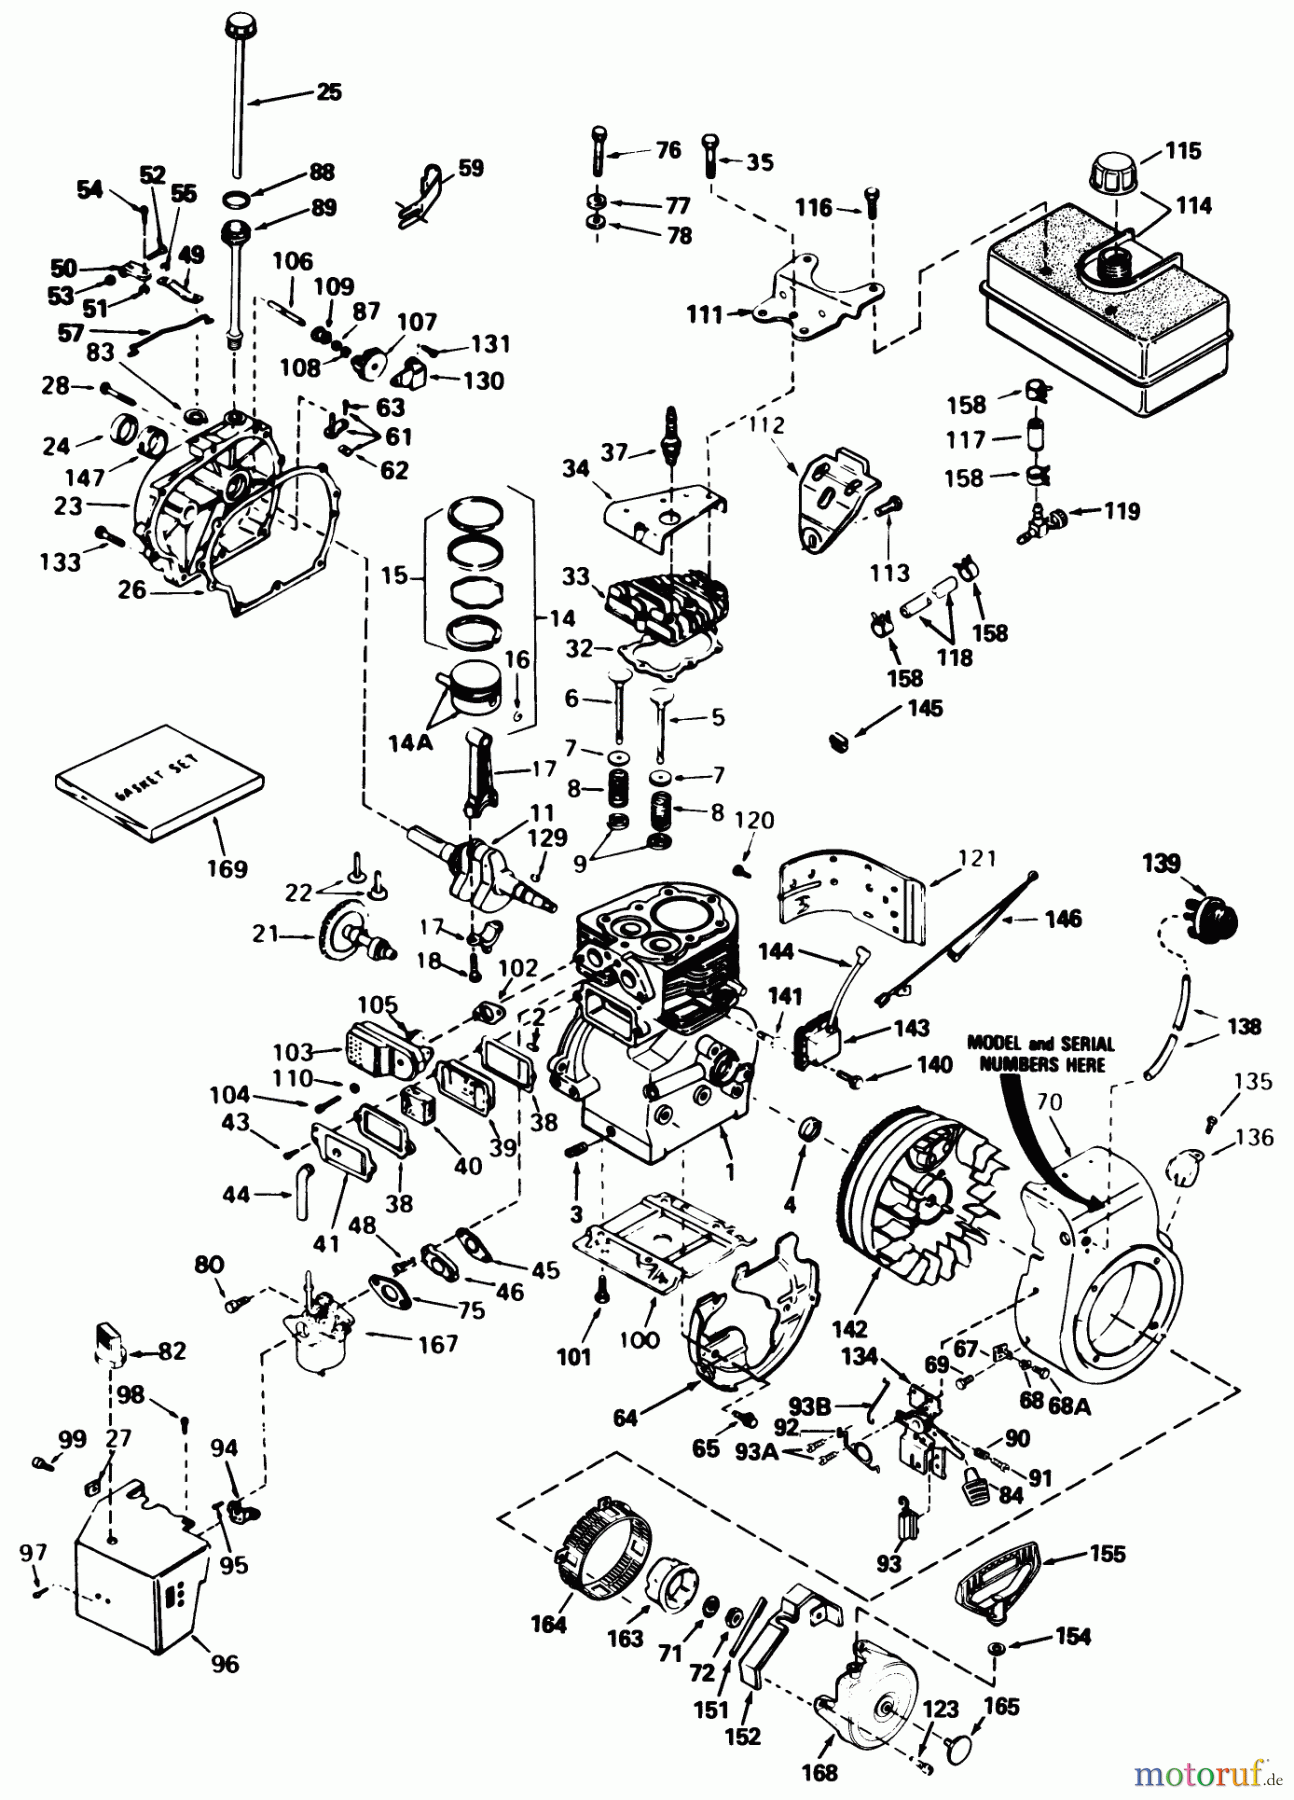  Toro Neu Snow Blowers/Snow Throwers Seite 1 38510 (624) - Toro 624 Power Shift Snowthrower, 1990 (0000001-0999999) ENGINE TECUMSEH MODEL NO. H60-75504W